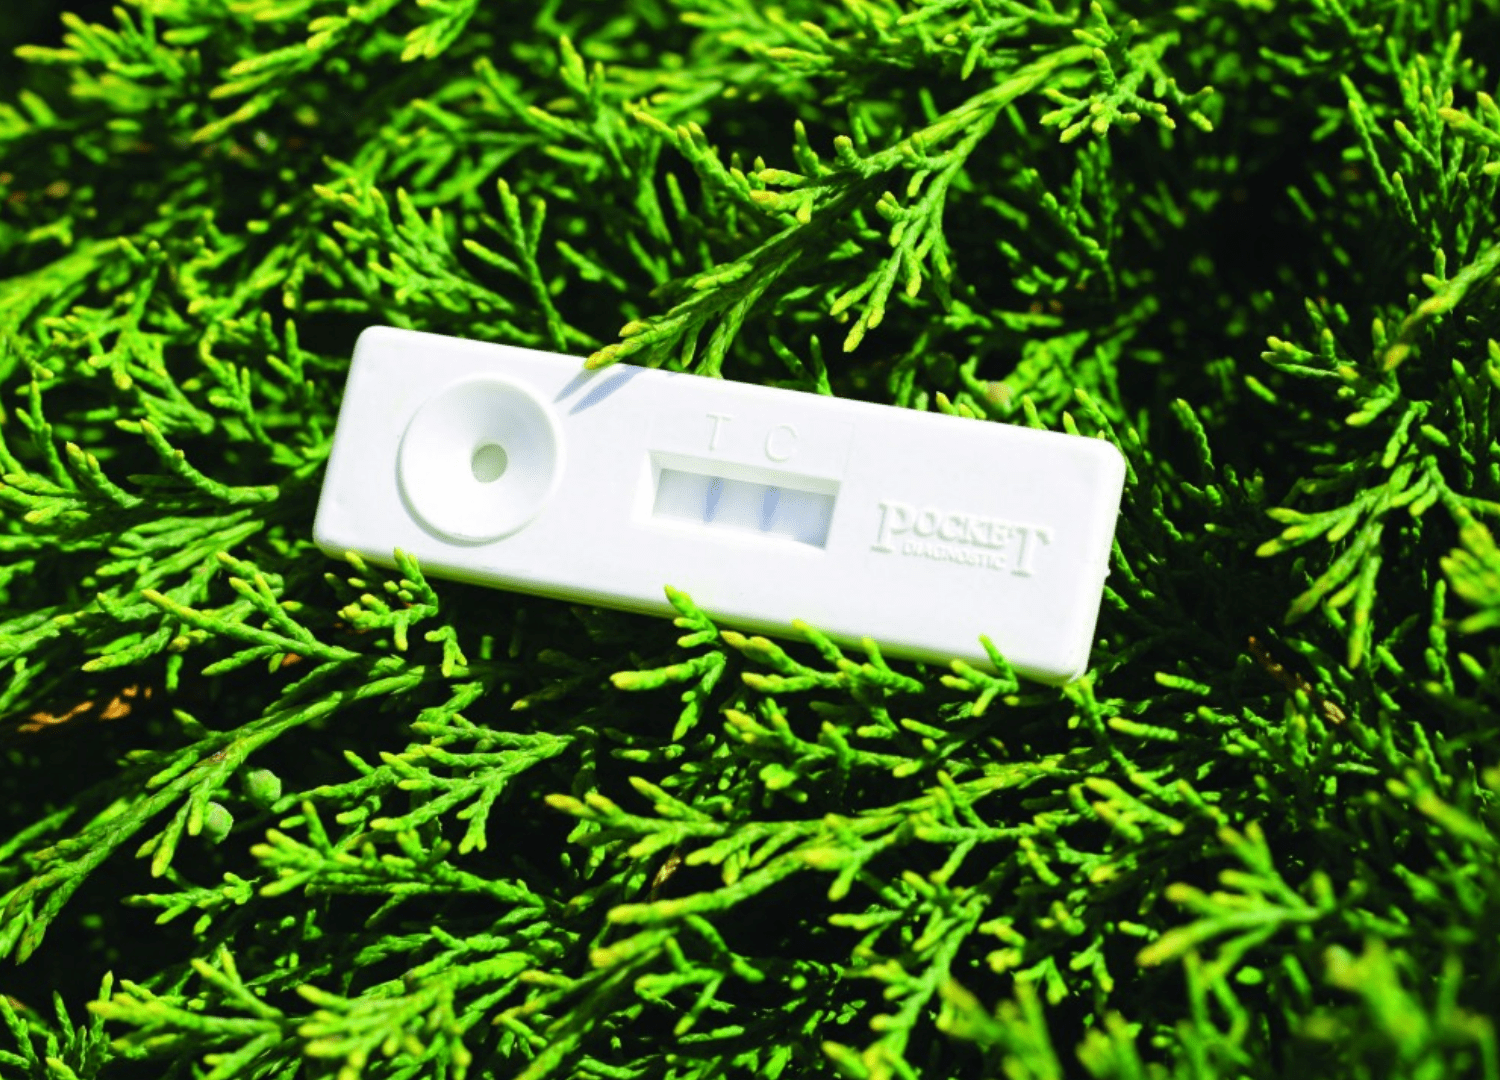 A Pocket Diagnostic test on a hedge background